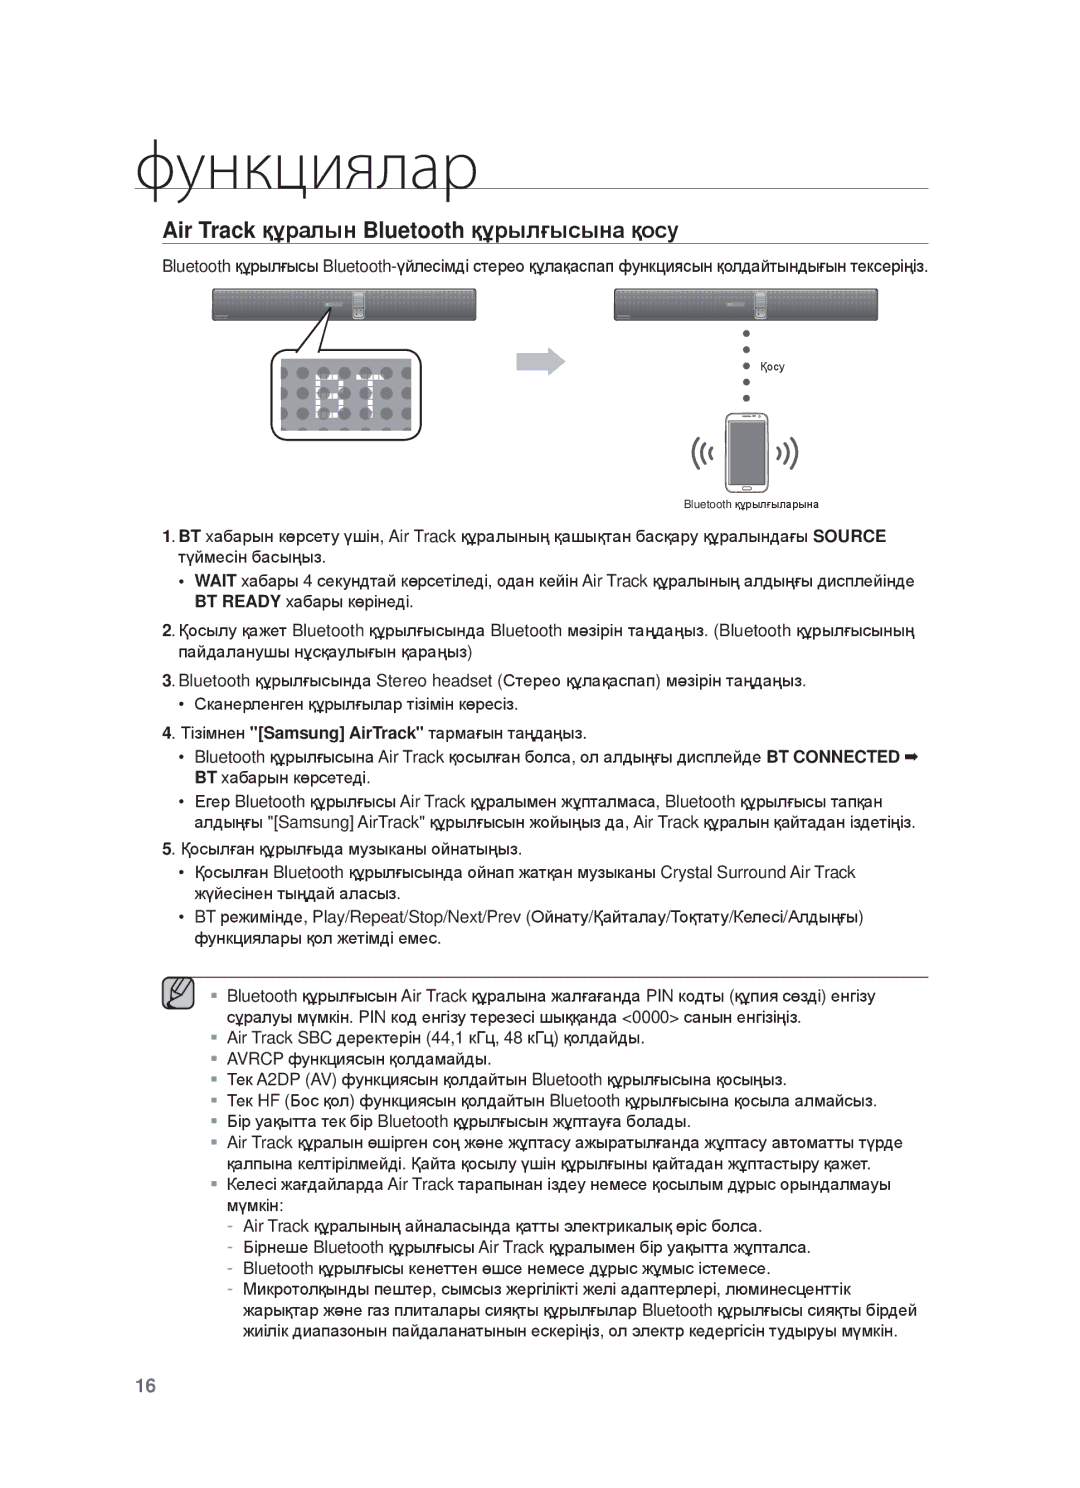 Samsung HW-F750/RU manual Air Track құɪɚлын Bluetooth құɪылғыɫынɚ қɨɫɭ 